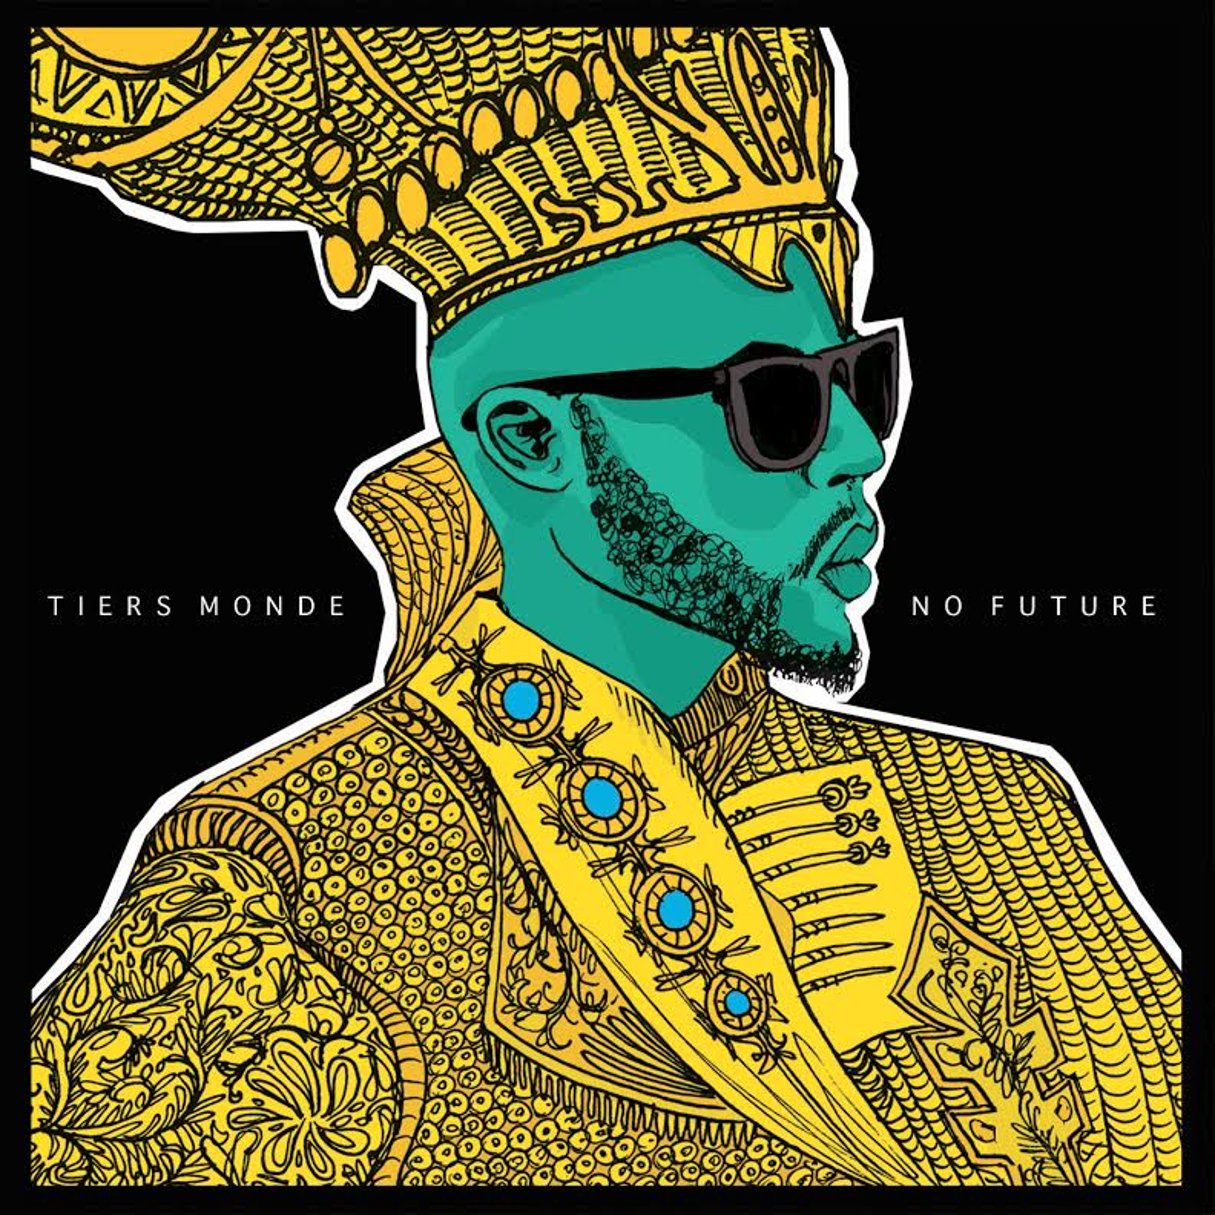 Cover du nouvel album de Tiers Monde. © Din Records.